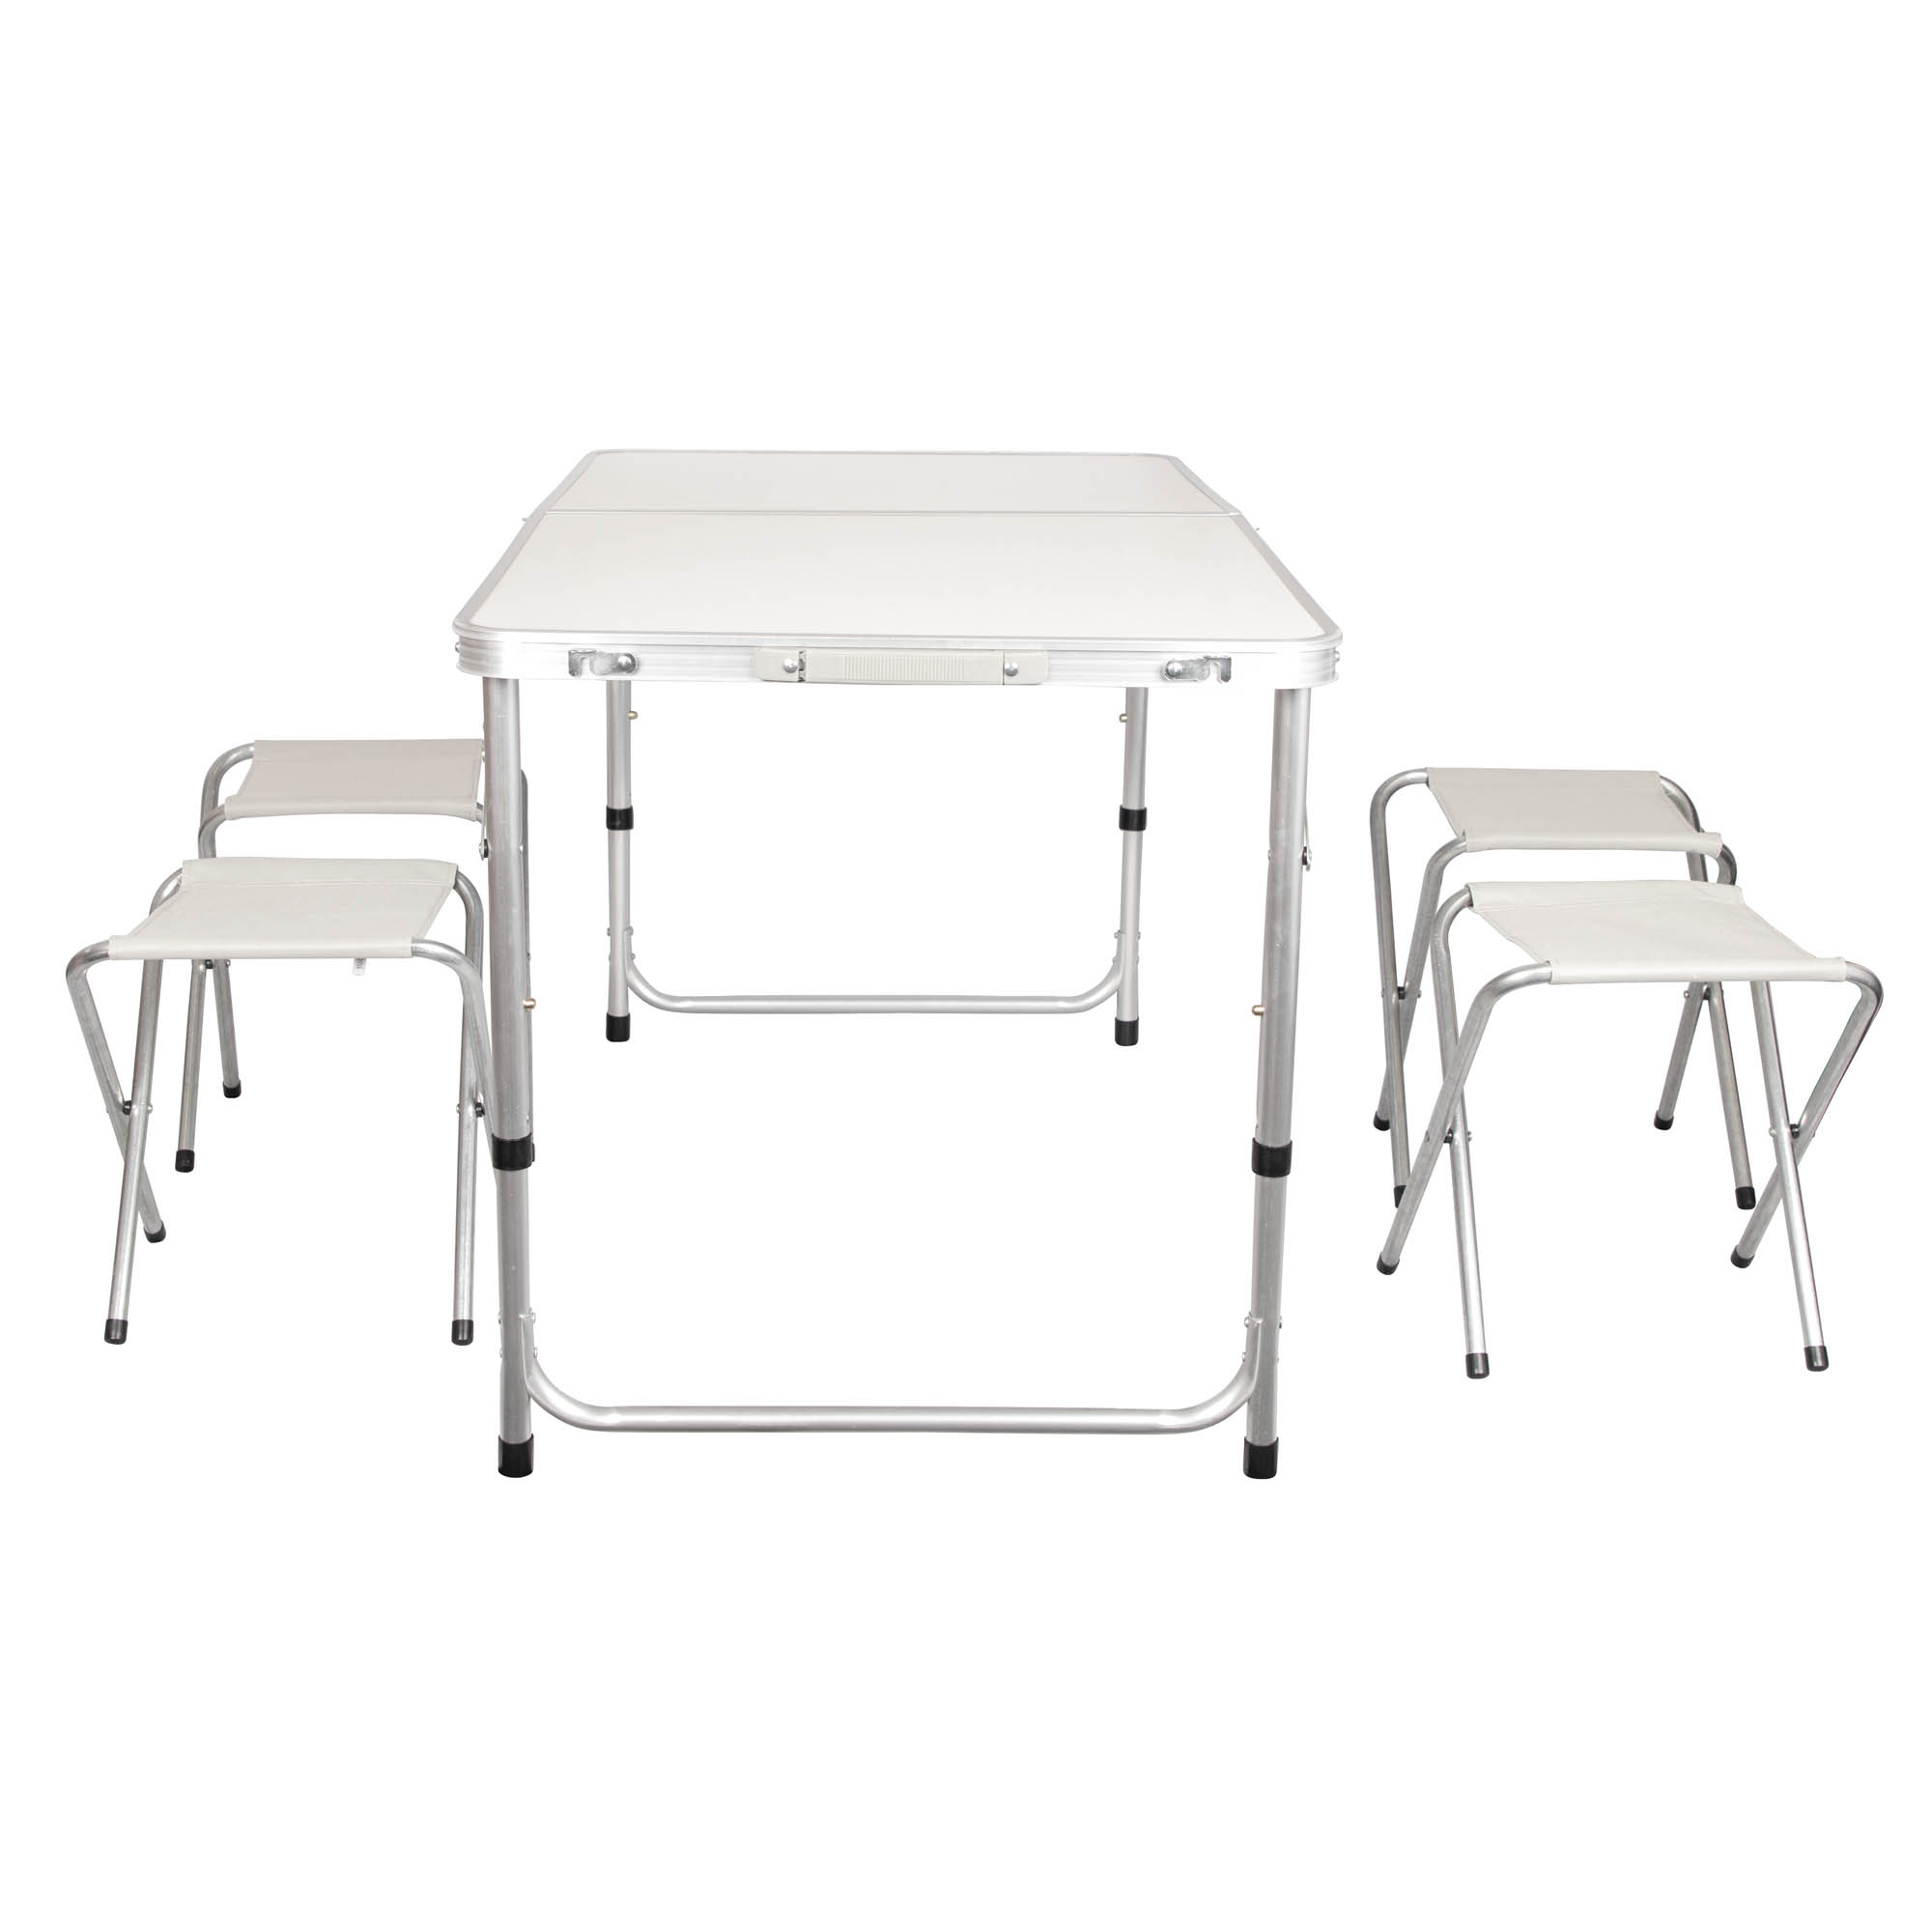 Campingtisch Klapptisch Gartentisch mit 4 Hocker Aluminium Weiß Creme